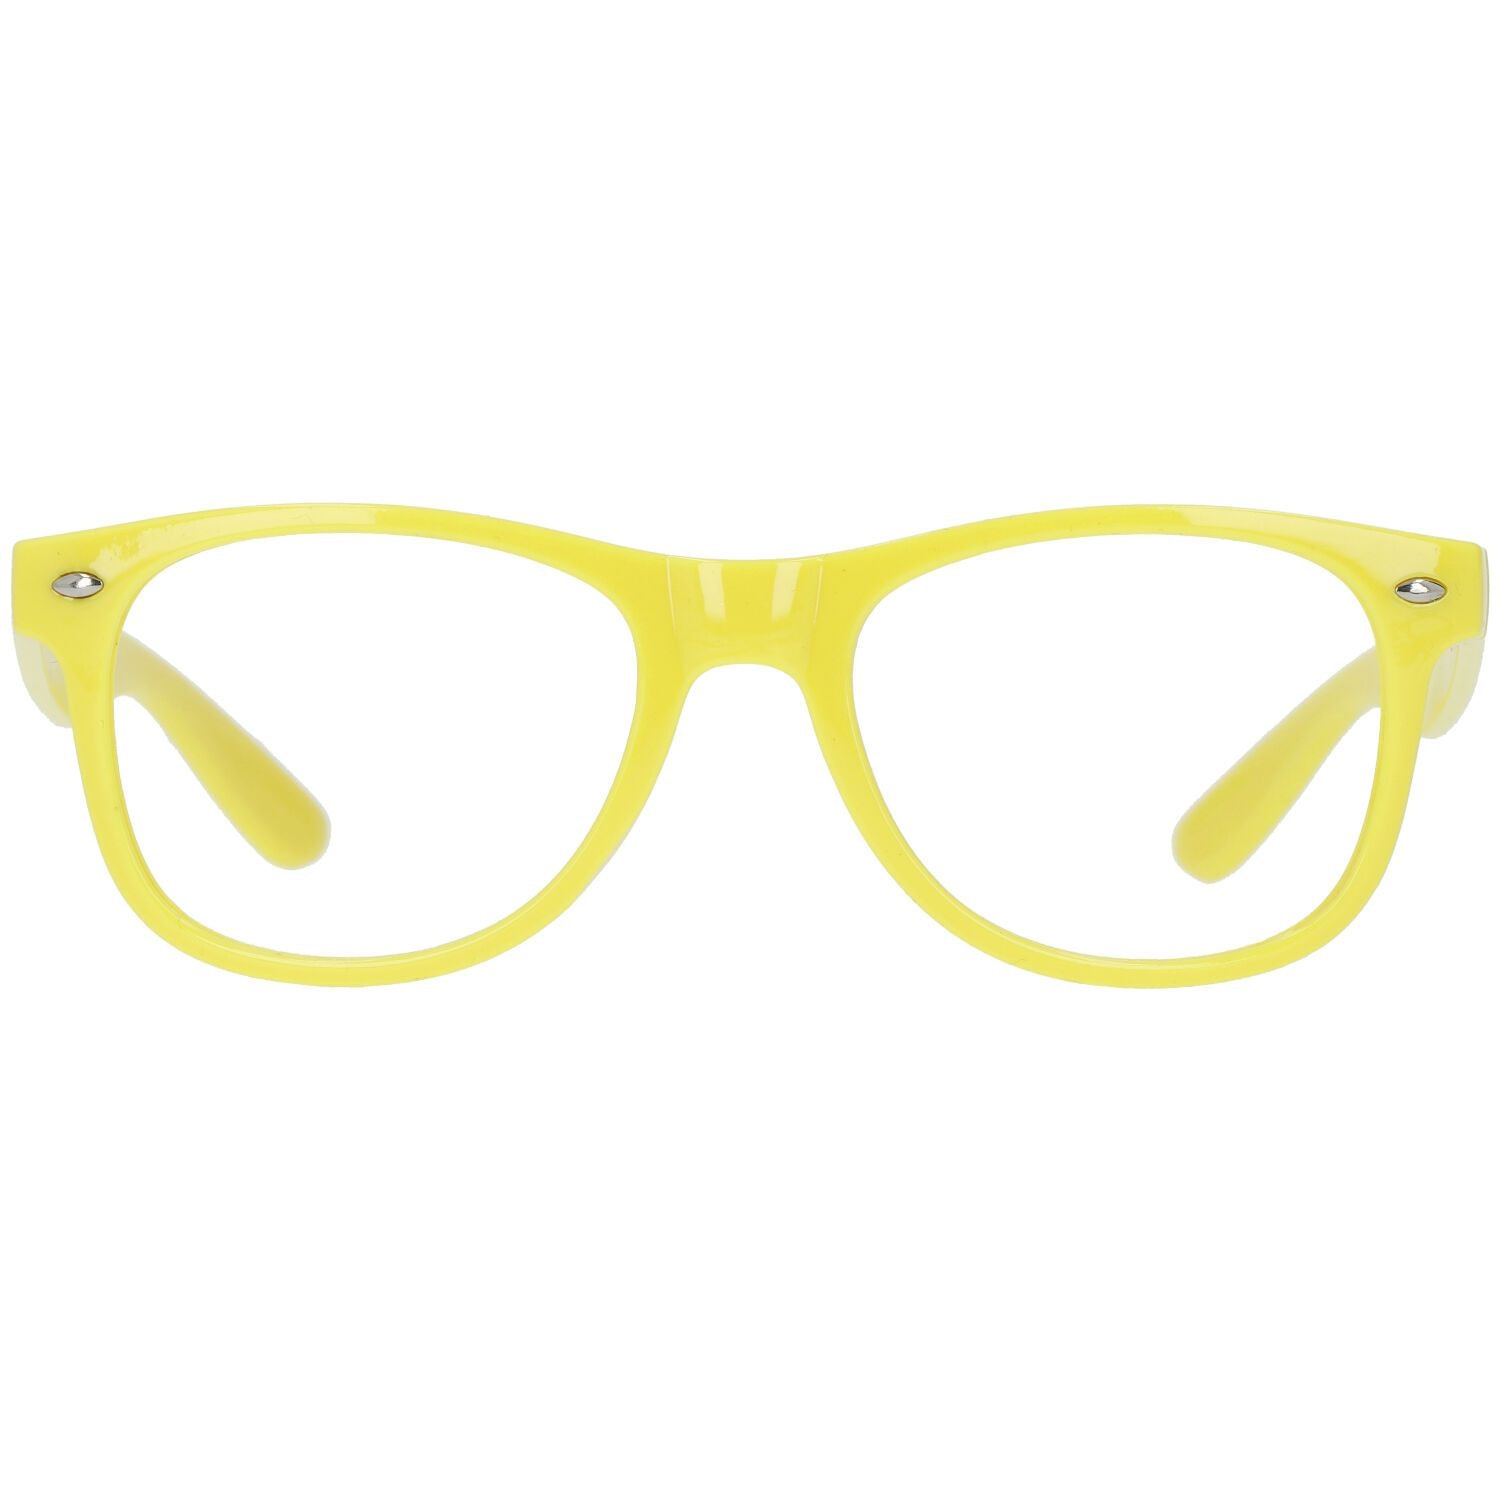 Blues Brothers feestbril neon geel